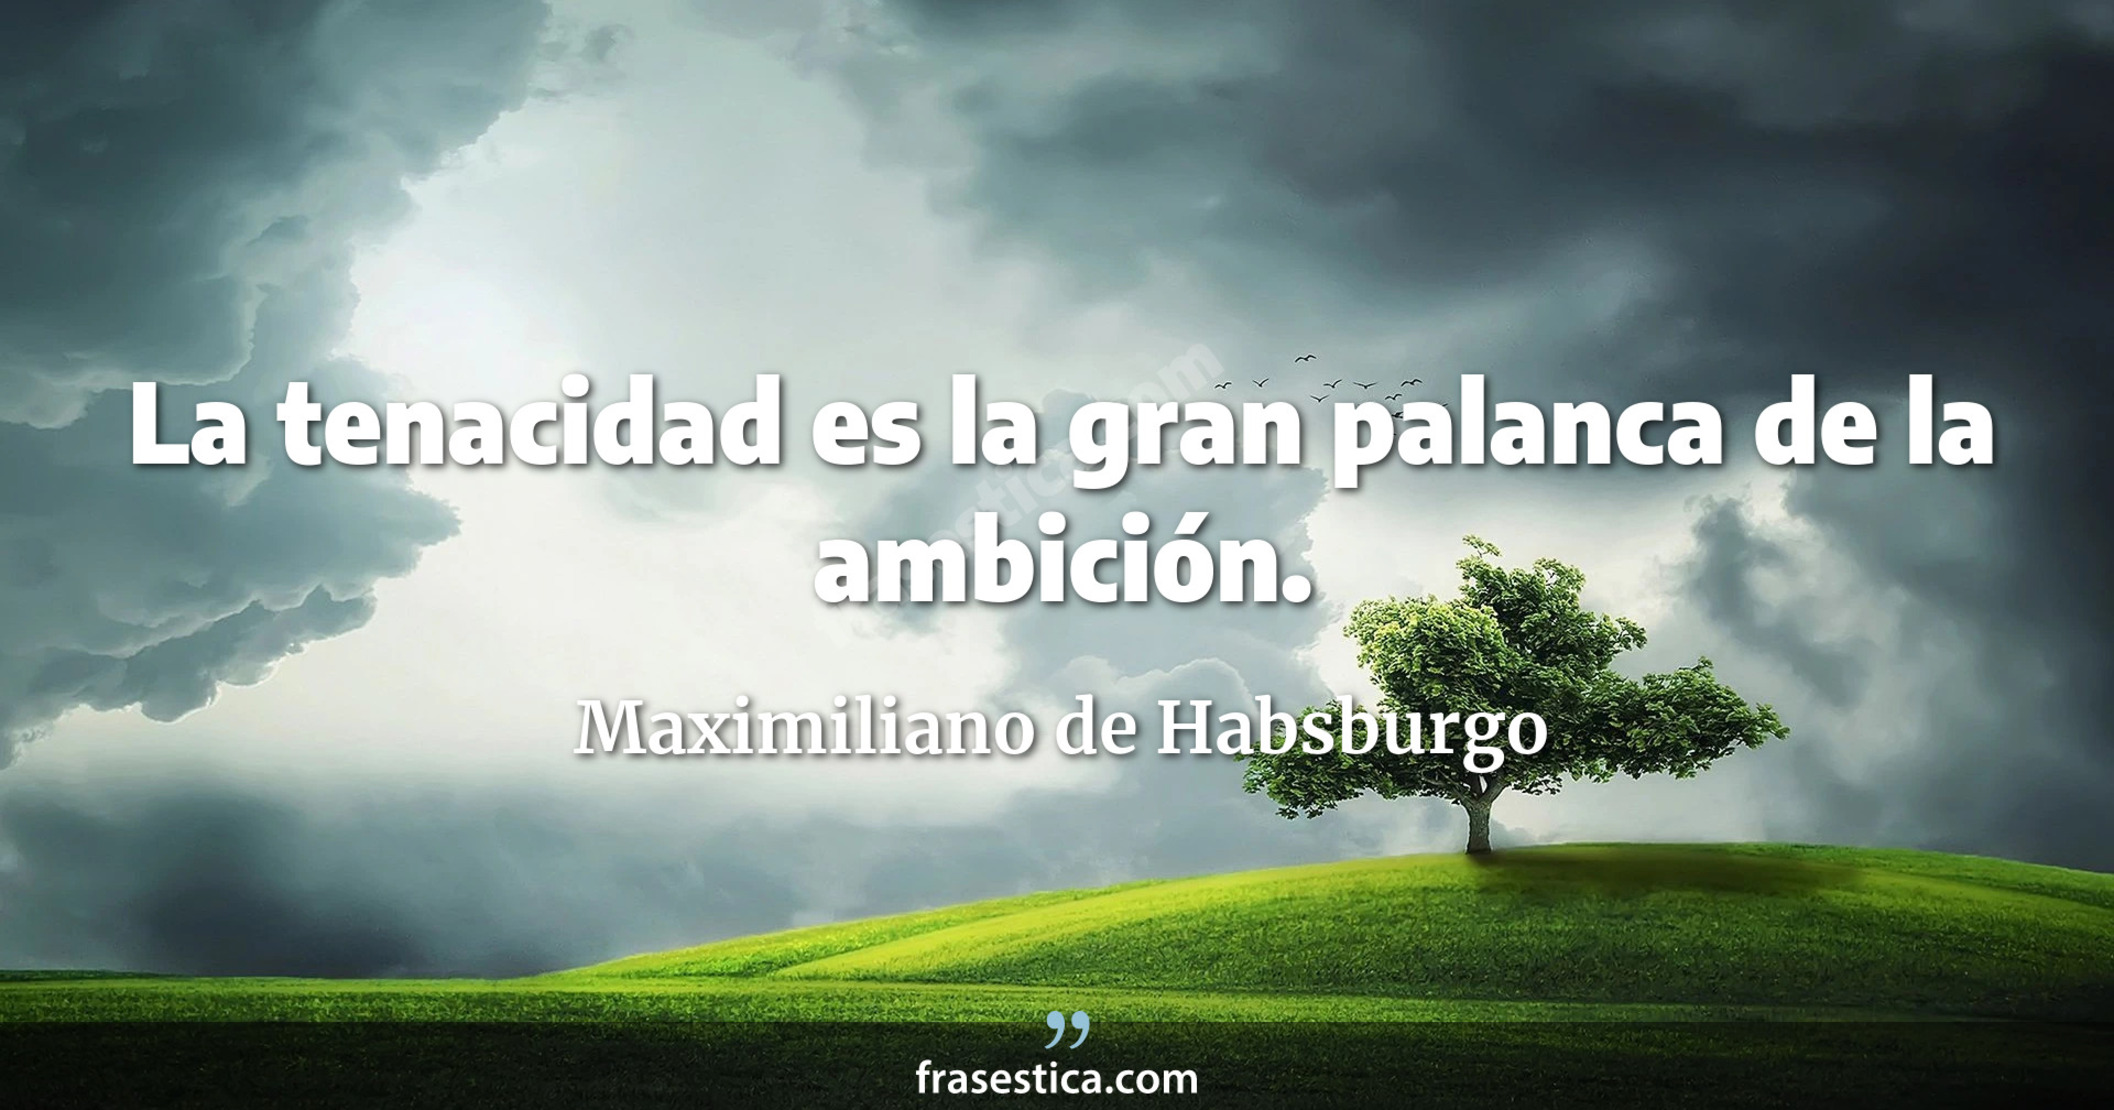 La tenacidad es la gran palanca de la ambición. - Maximiliano de Habsburgo